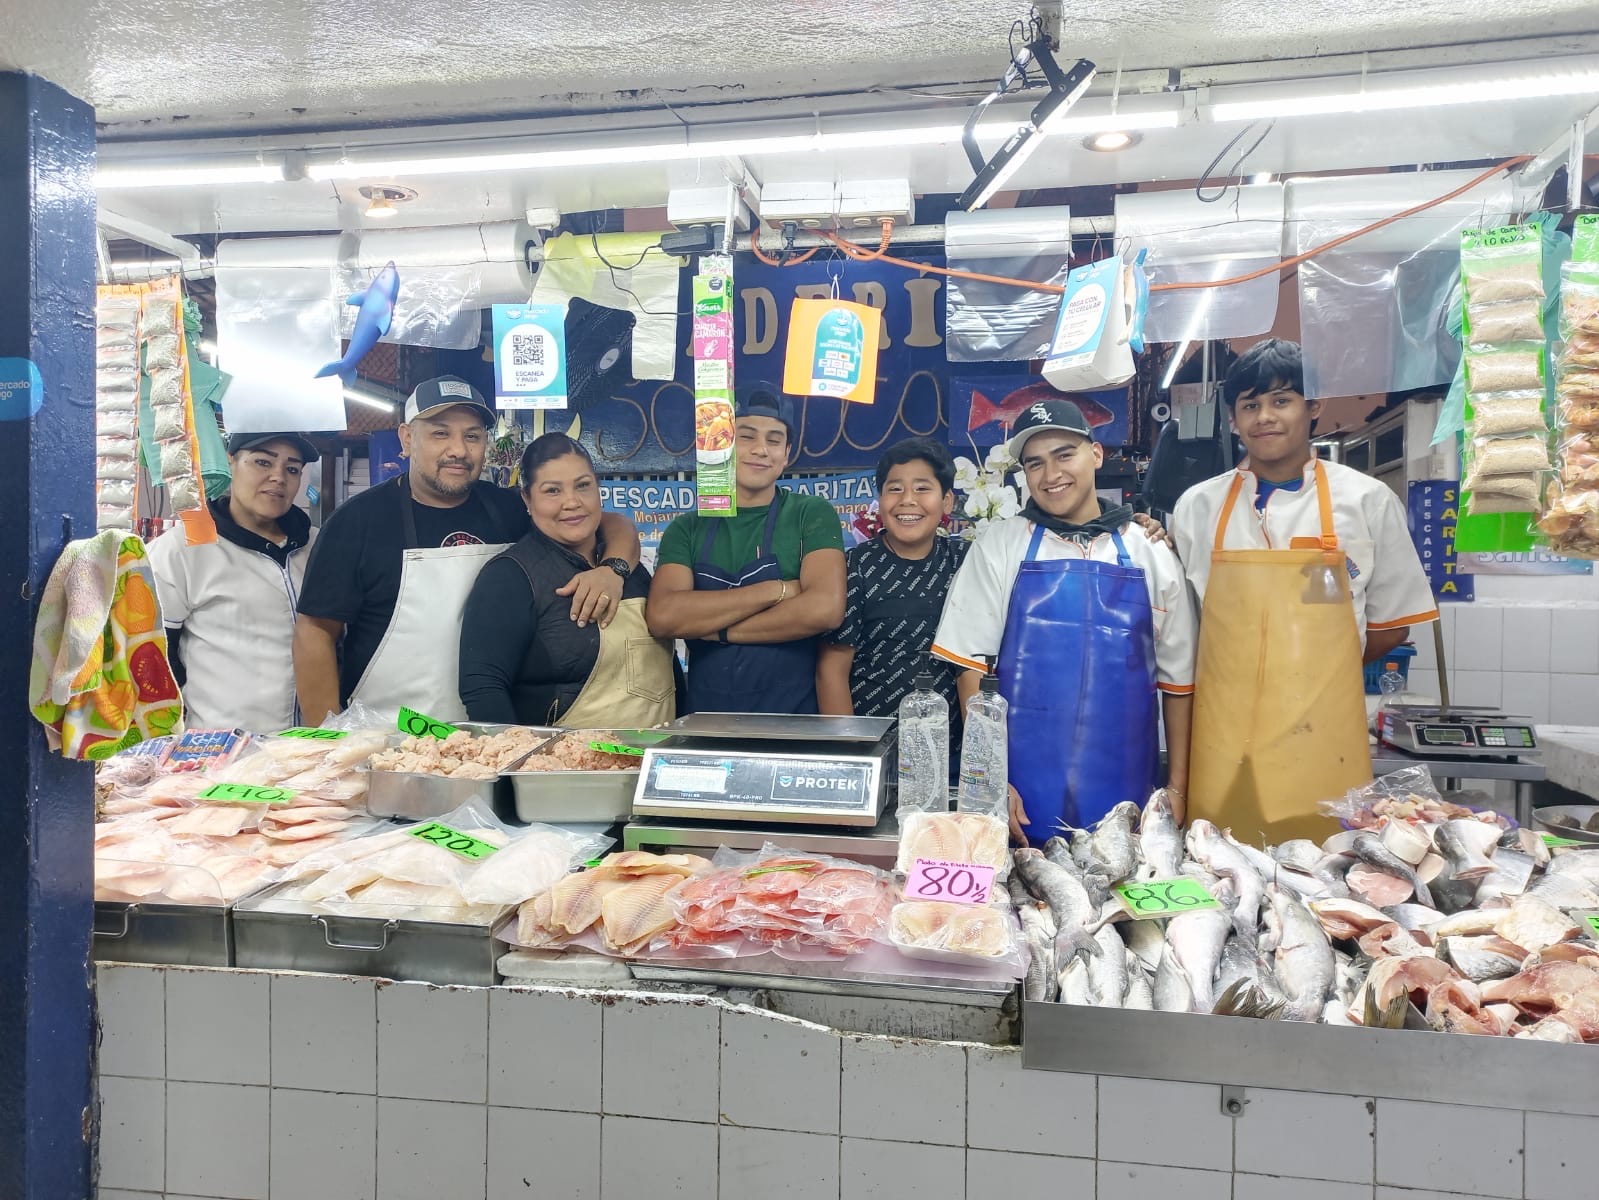 Con inicio de cuaresma también se elevó precio del pescado de 10 a 30 pesos más